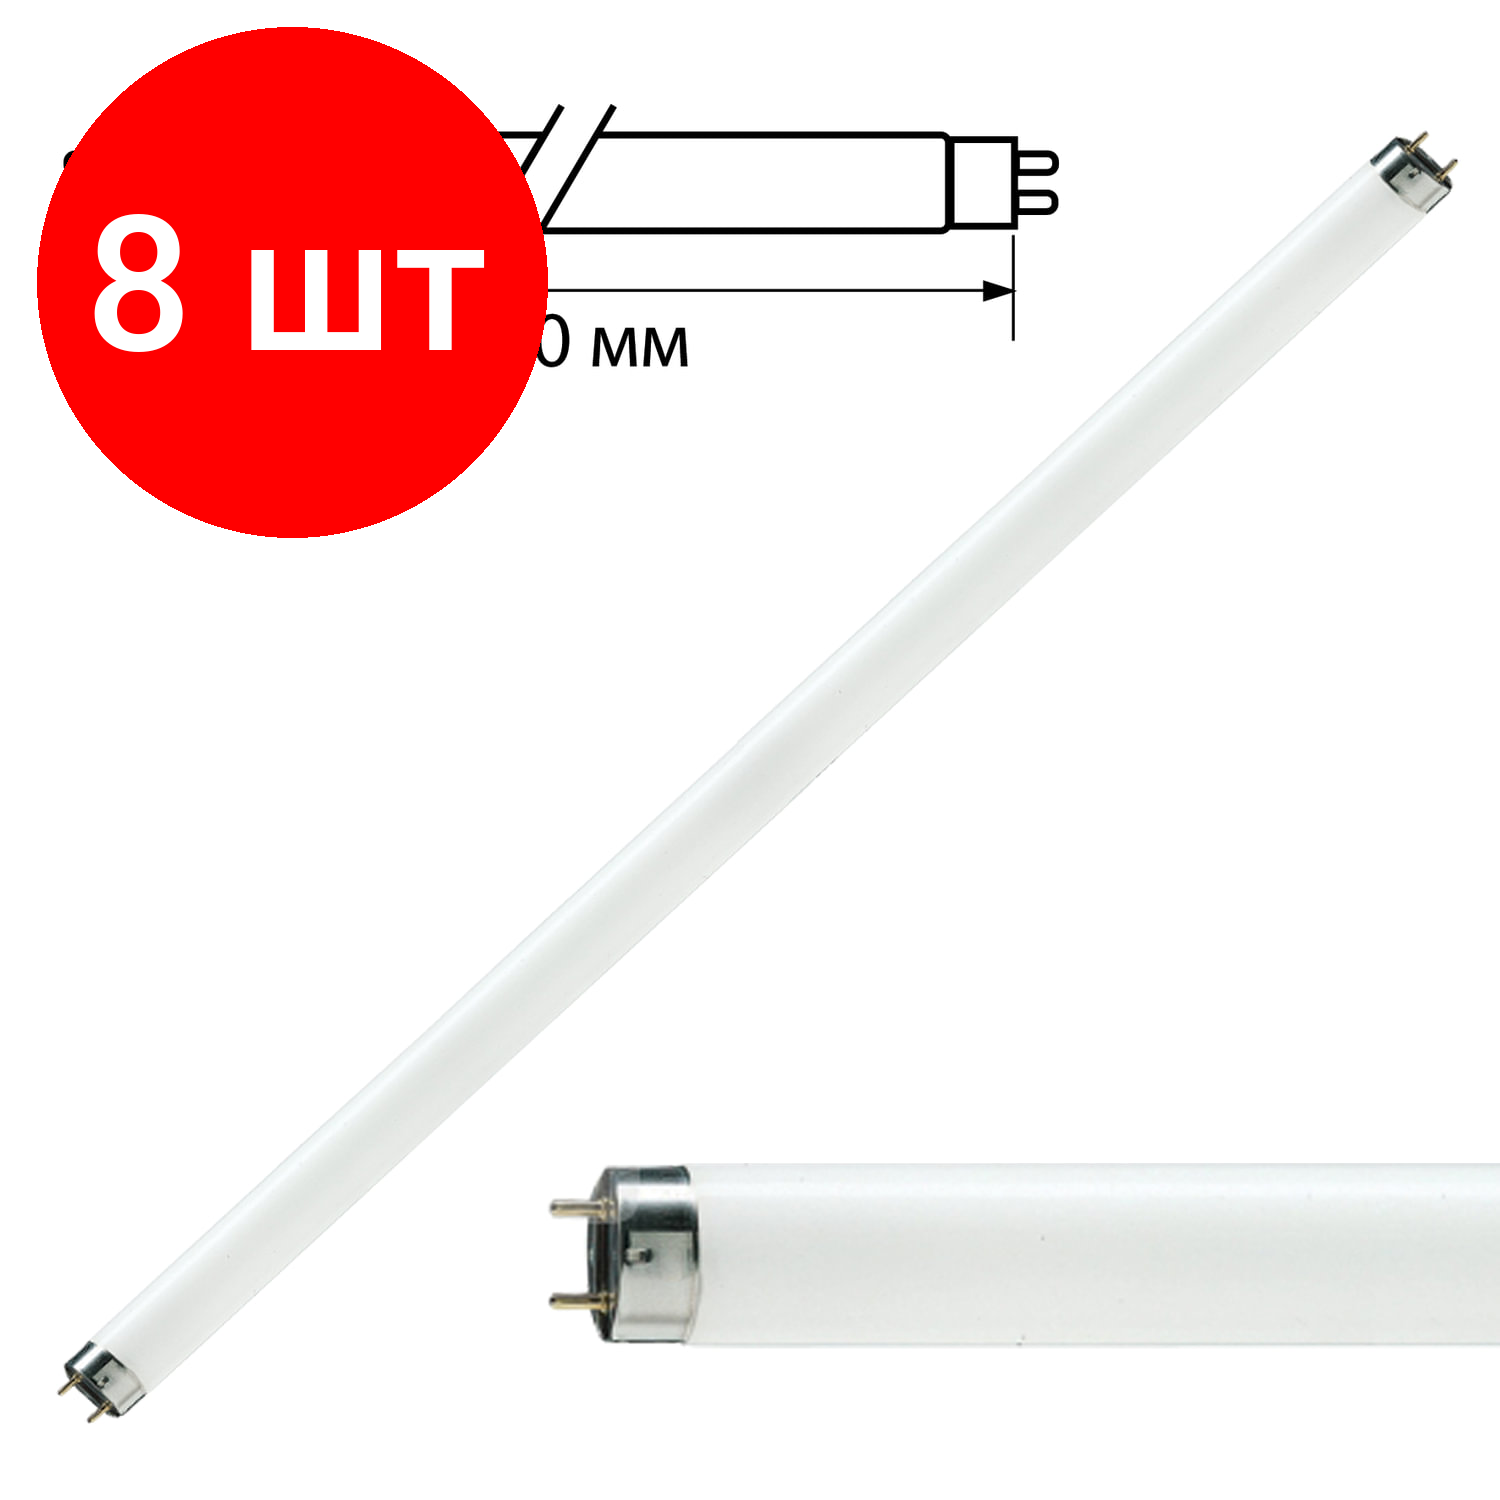 Комплект 8 шт, Лампа люминесцентная PHILIPS TL-D 36W/33-640, 36 Вт, цоколь G13, в виде трубки 120 см